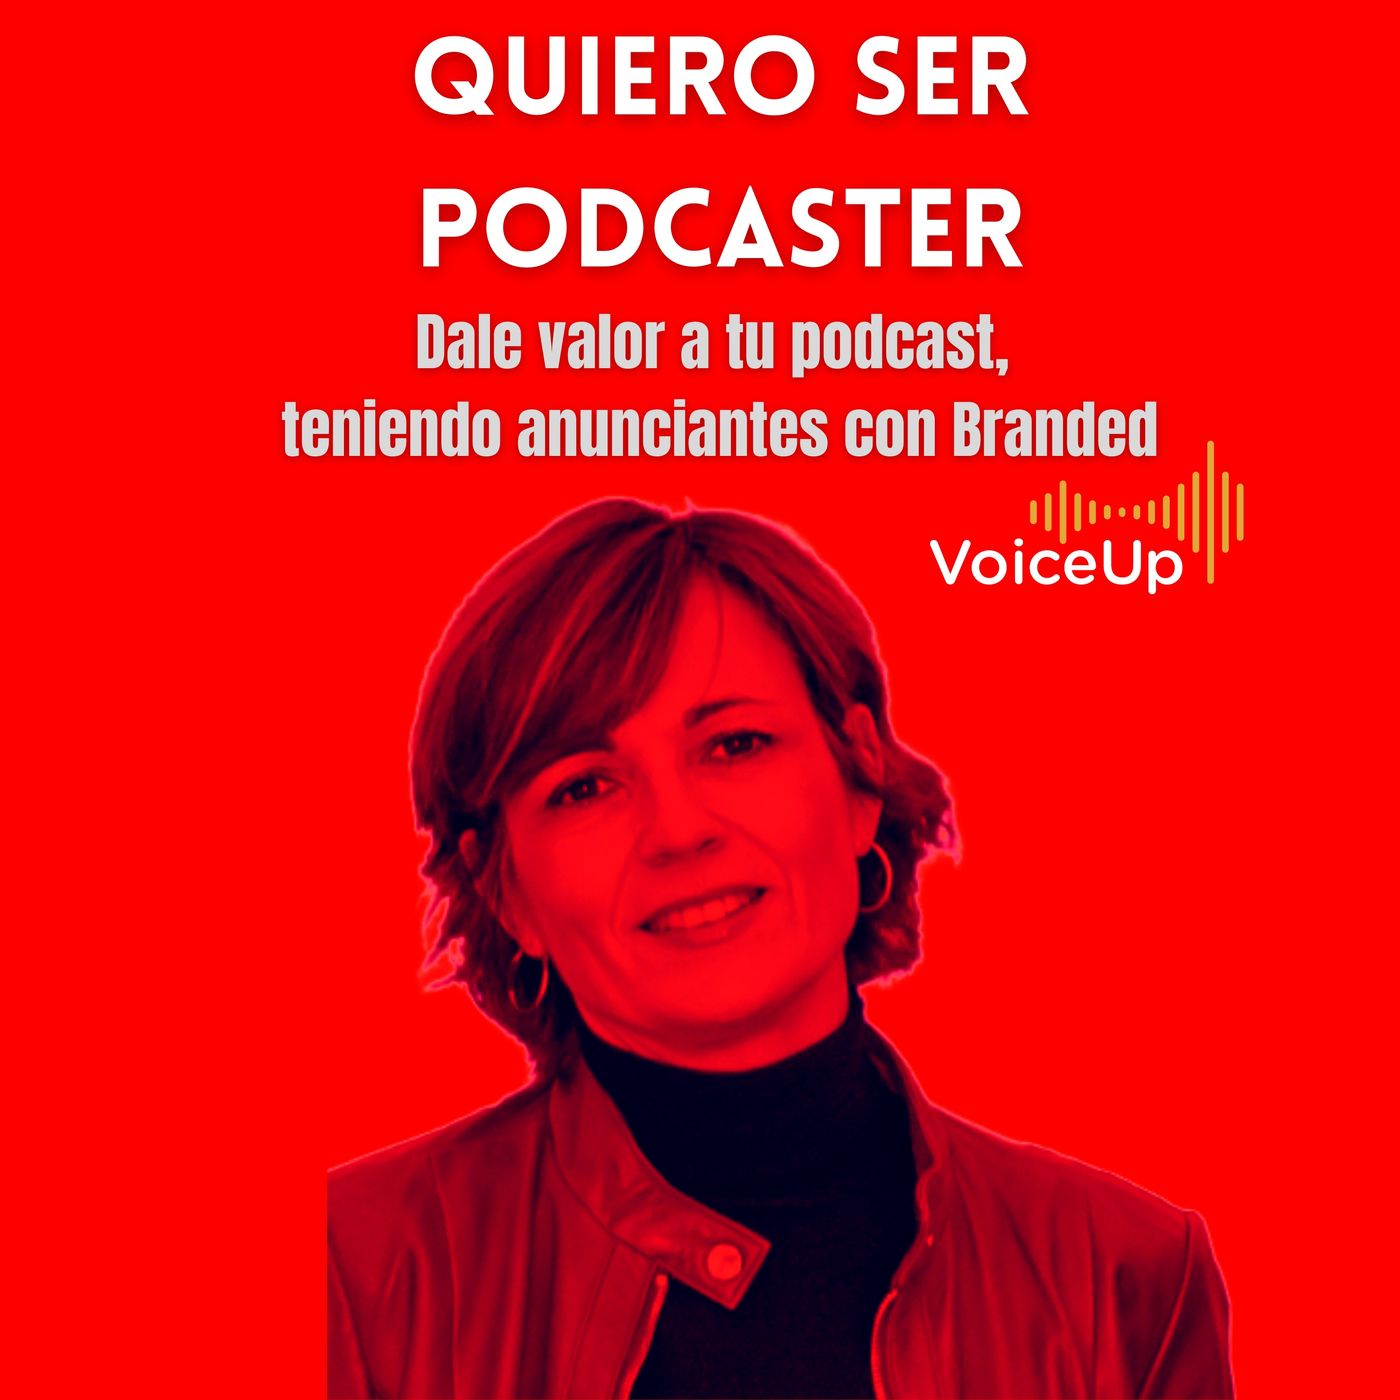 Dale valor a tu podcast, teniendo anunciantes con Branded con VoiceUP @evacorrea